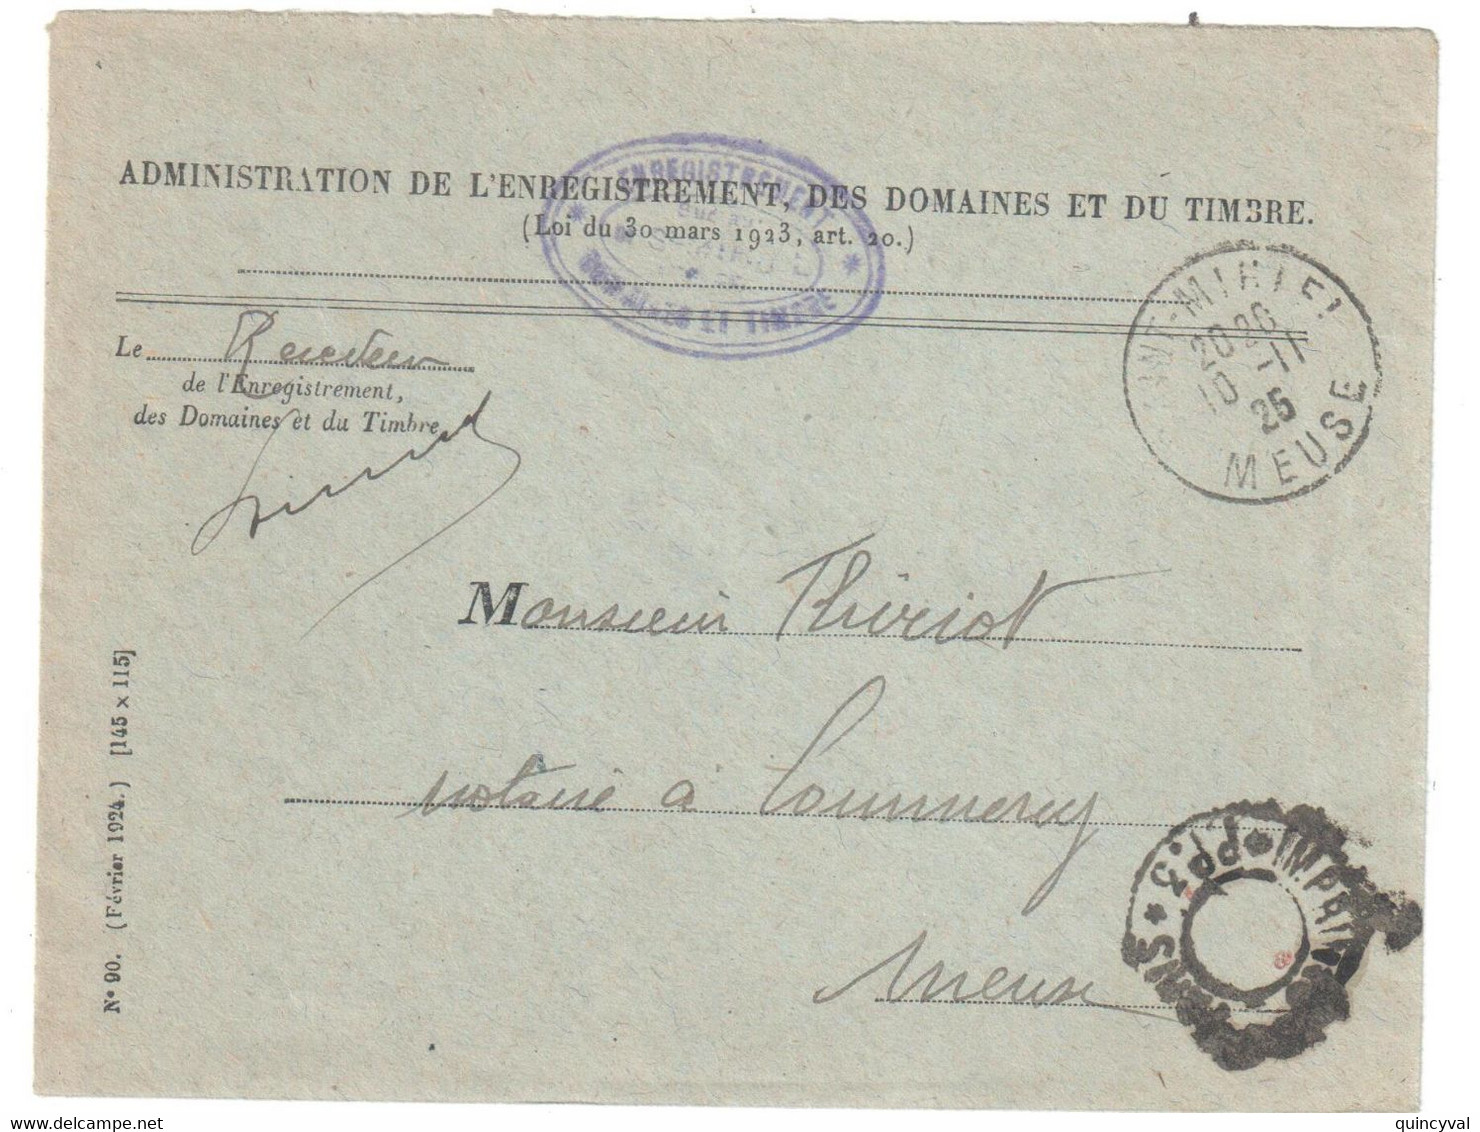 St MIHIEL Meuse Lettre Franchise Entête 1925 Enregistrement Domaines Timbres Dest Commercy Franchise Imprimés Paris PP3 - Cartas Civiles En Franquicia